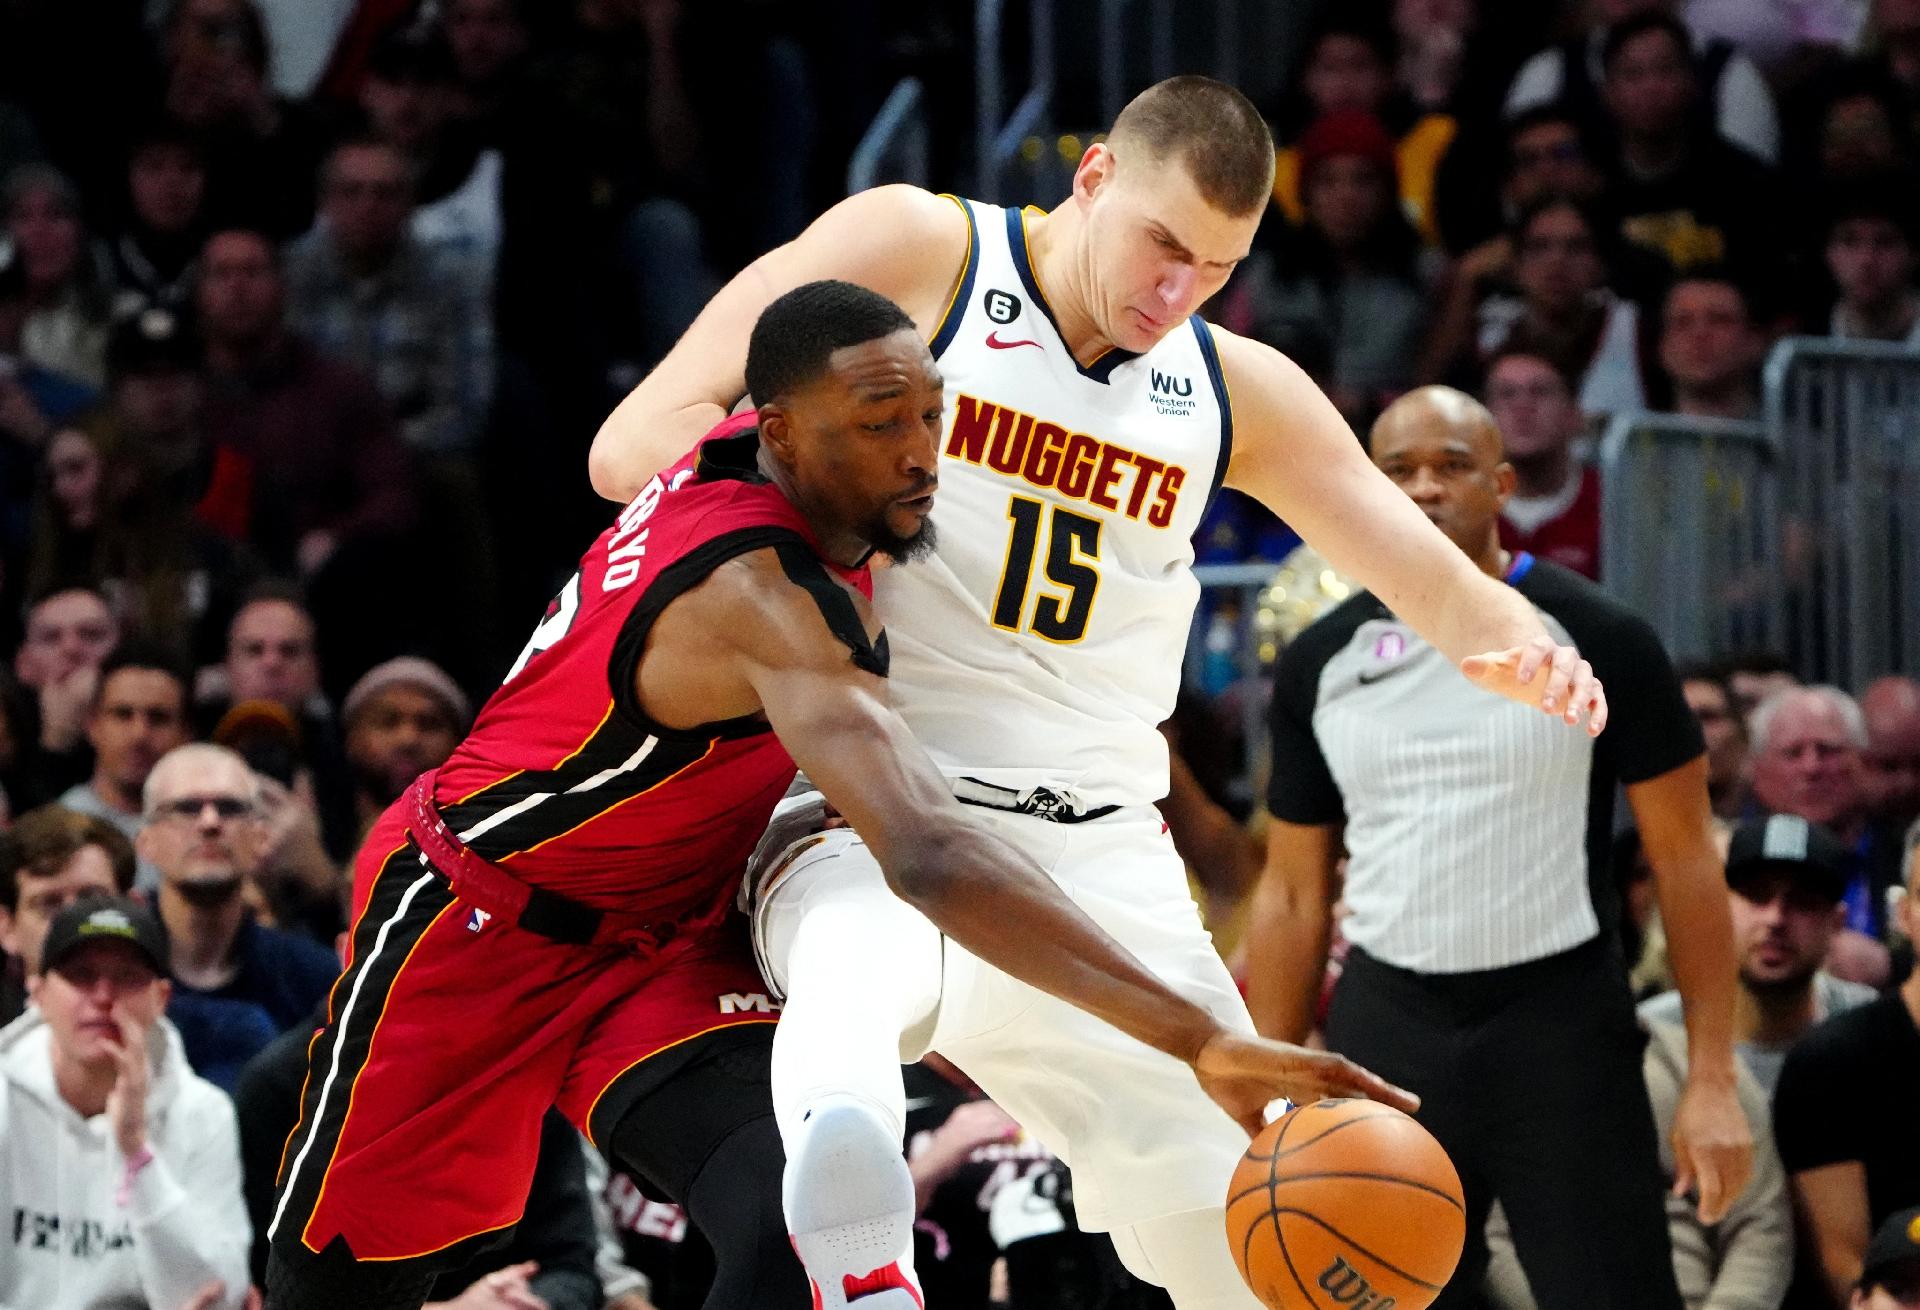 Denver Nuggets bate Miami Heat e se torna campeão da NBA - AcheiUSA